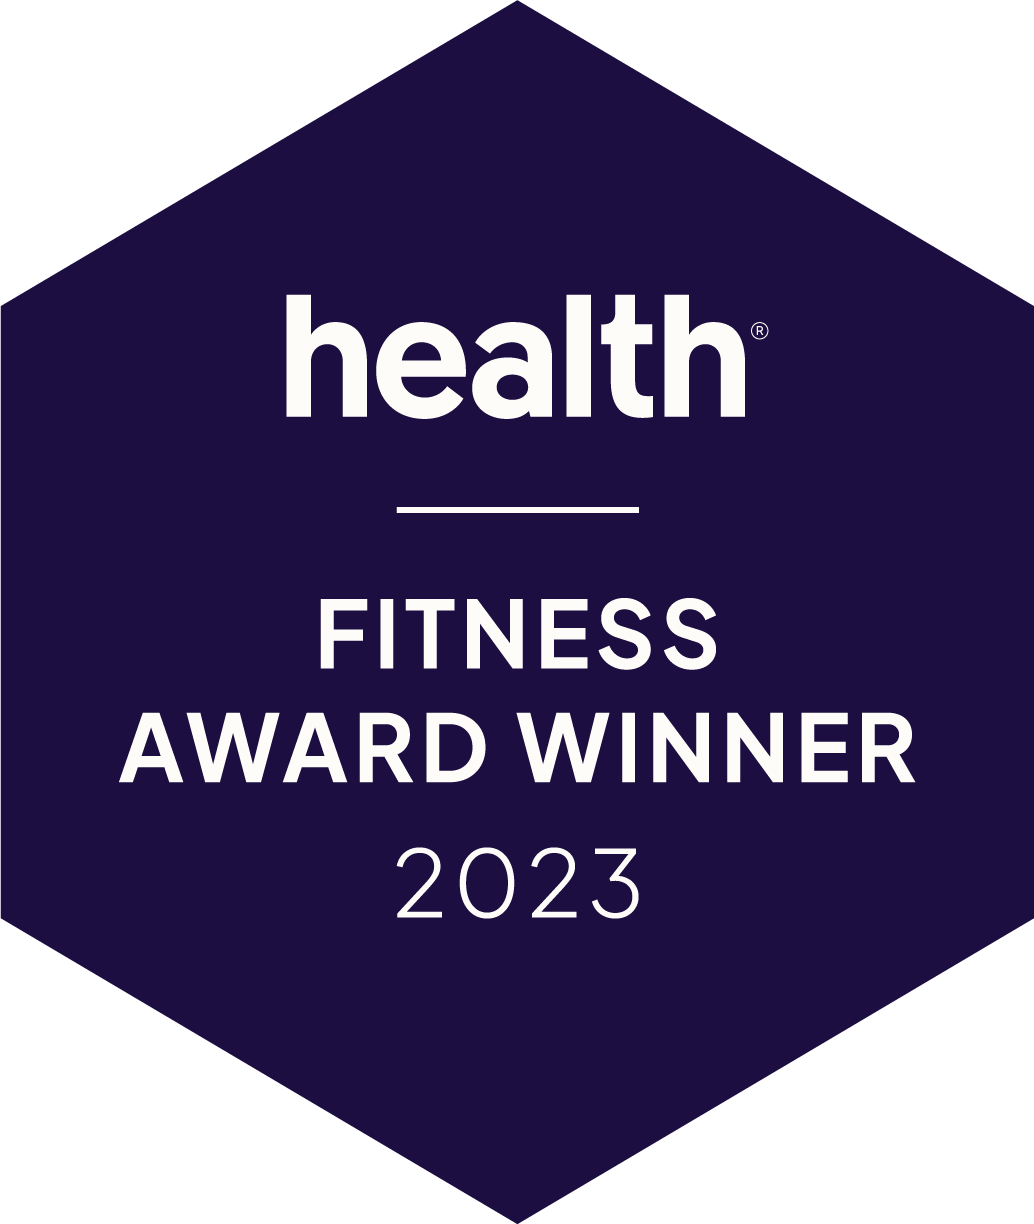 Health Fitness Award Winner 2023